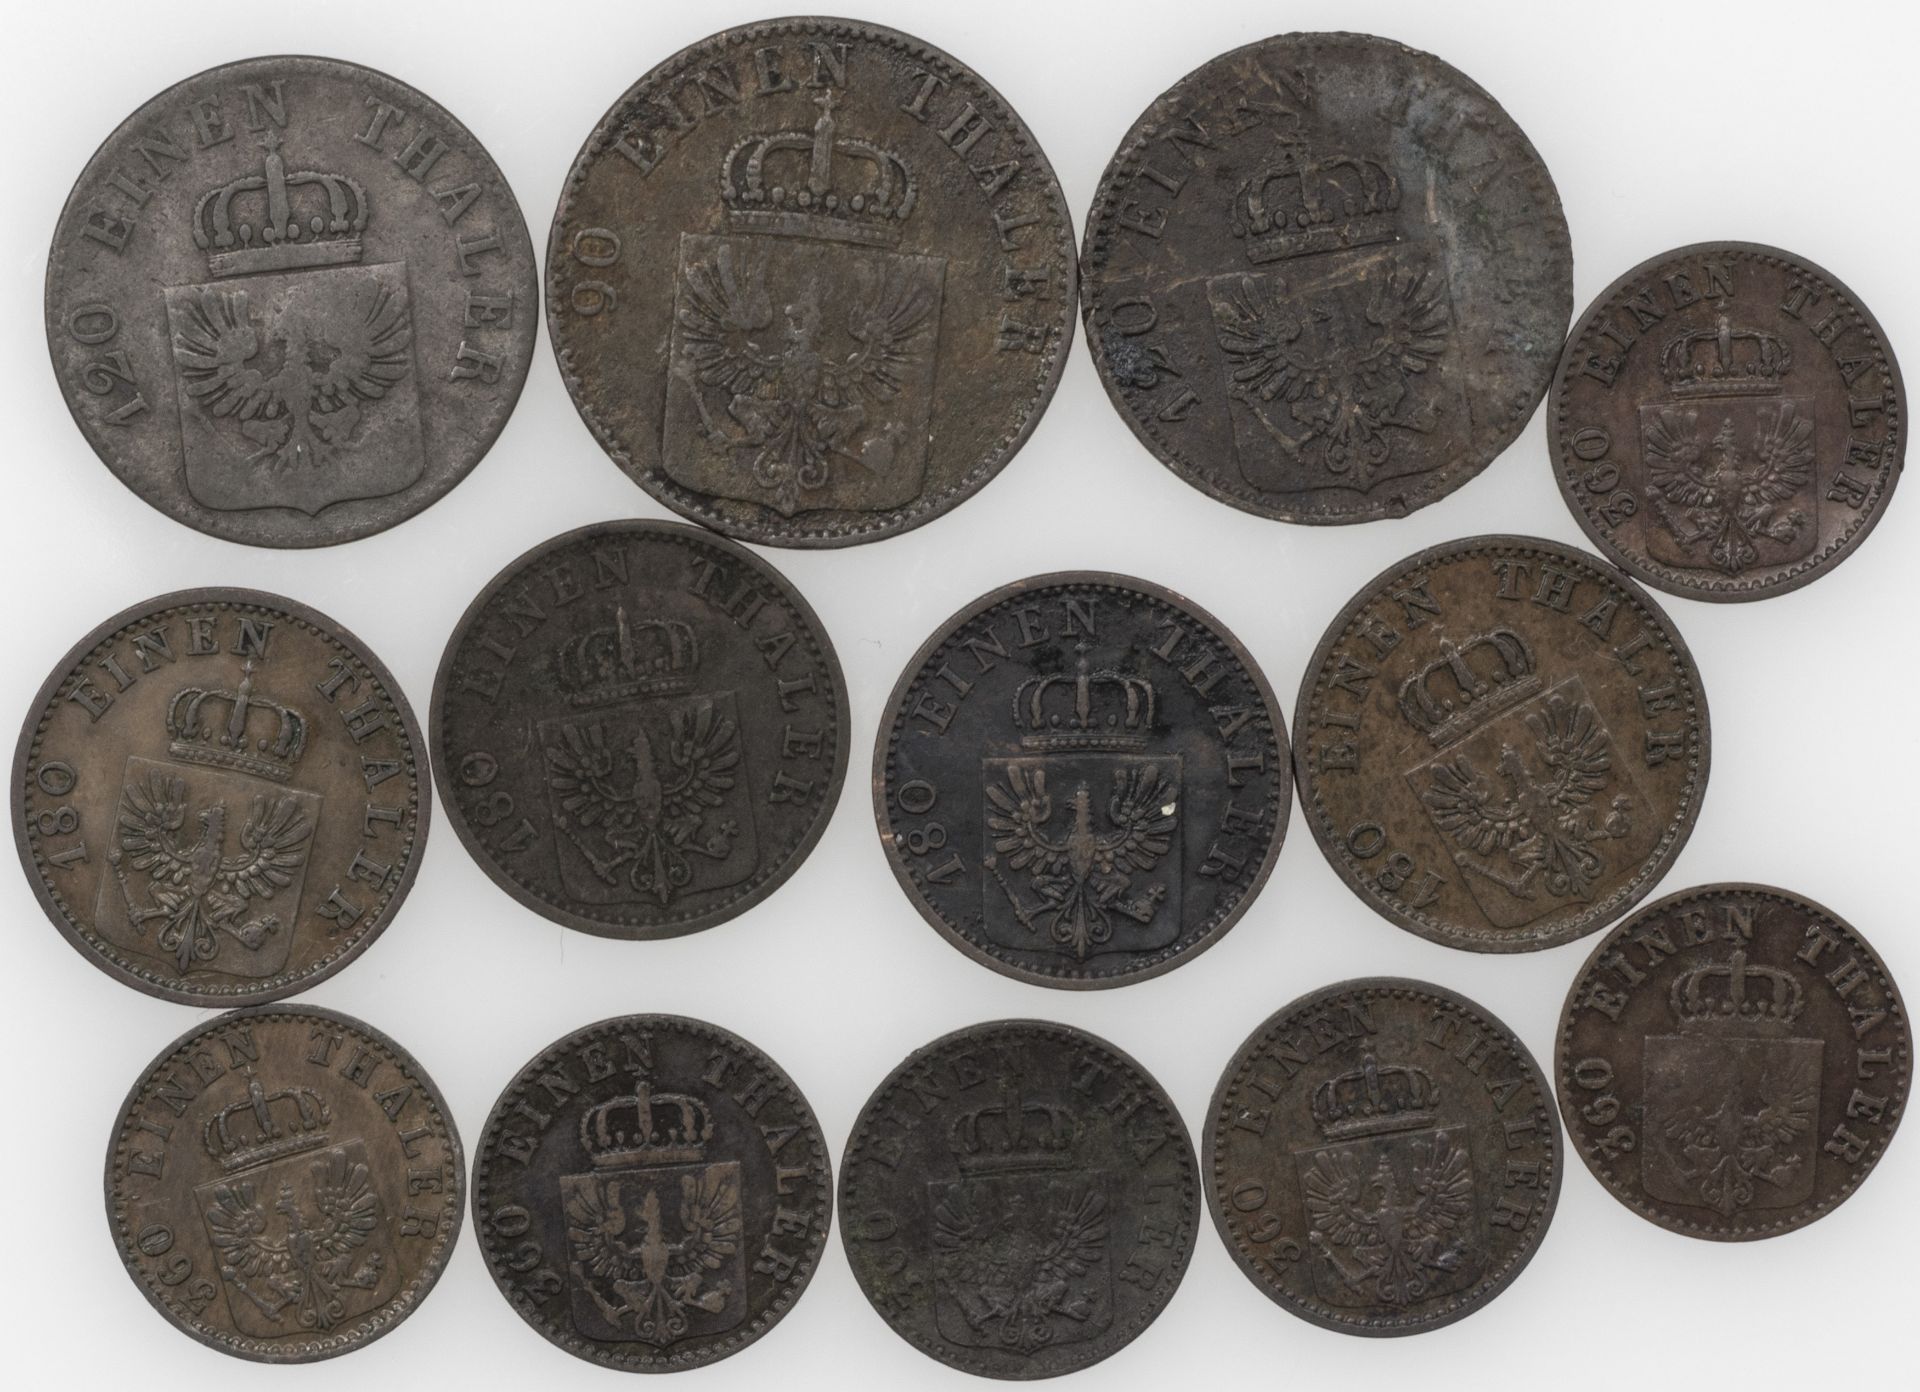 Altdeutschland Preußen 1852/70, Lot 1 Pf, 2 Pf, 3 Pf. und 4 Pfennig - Münzen. Erhaltung: ss. - Image 2 of 2